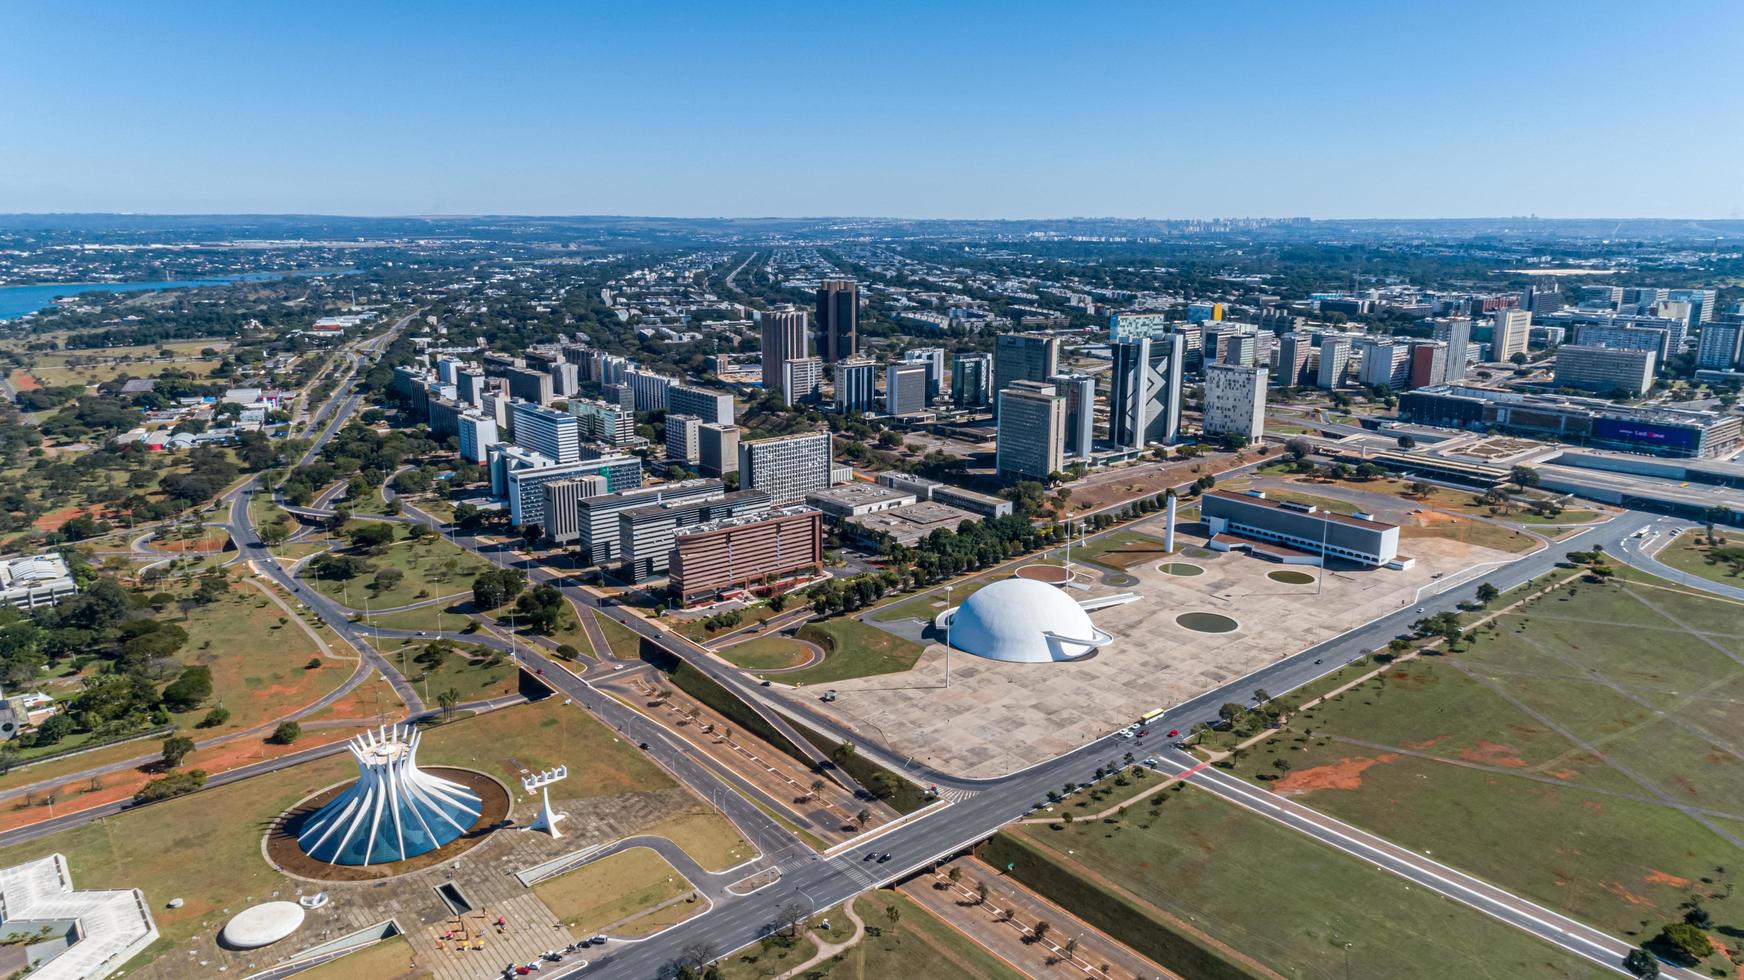 brasilia, distrito föderales brasilien ca. juni 2020 luftbild von brasilia, der hauptstadt von brasilien. foto